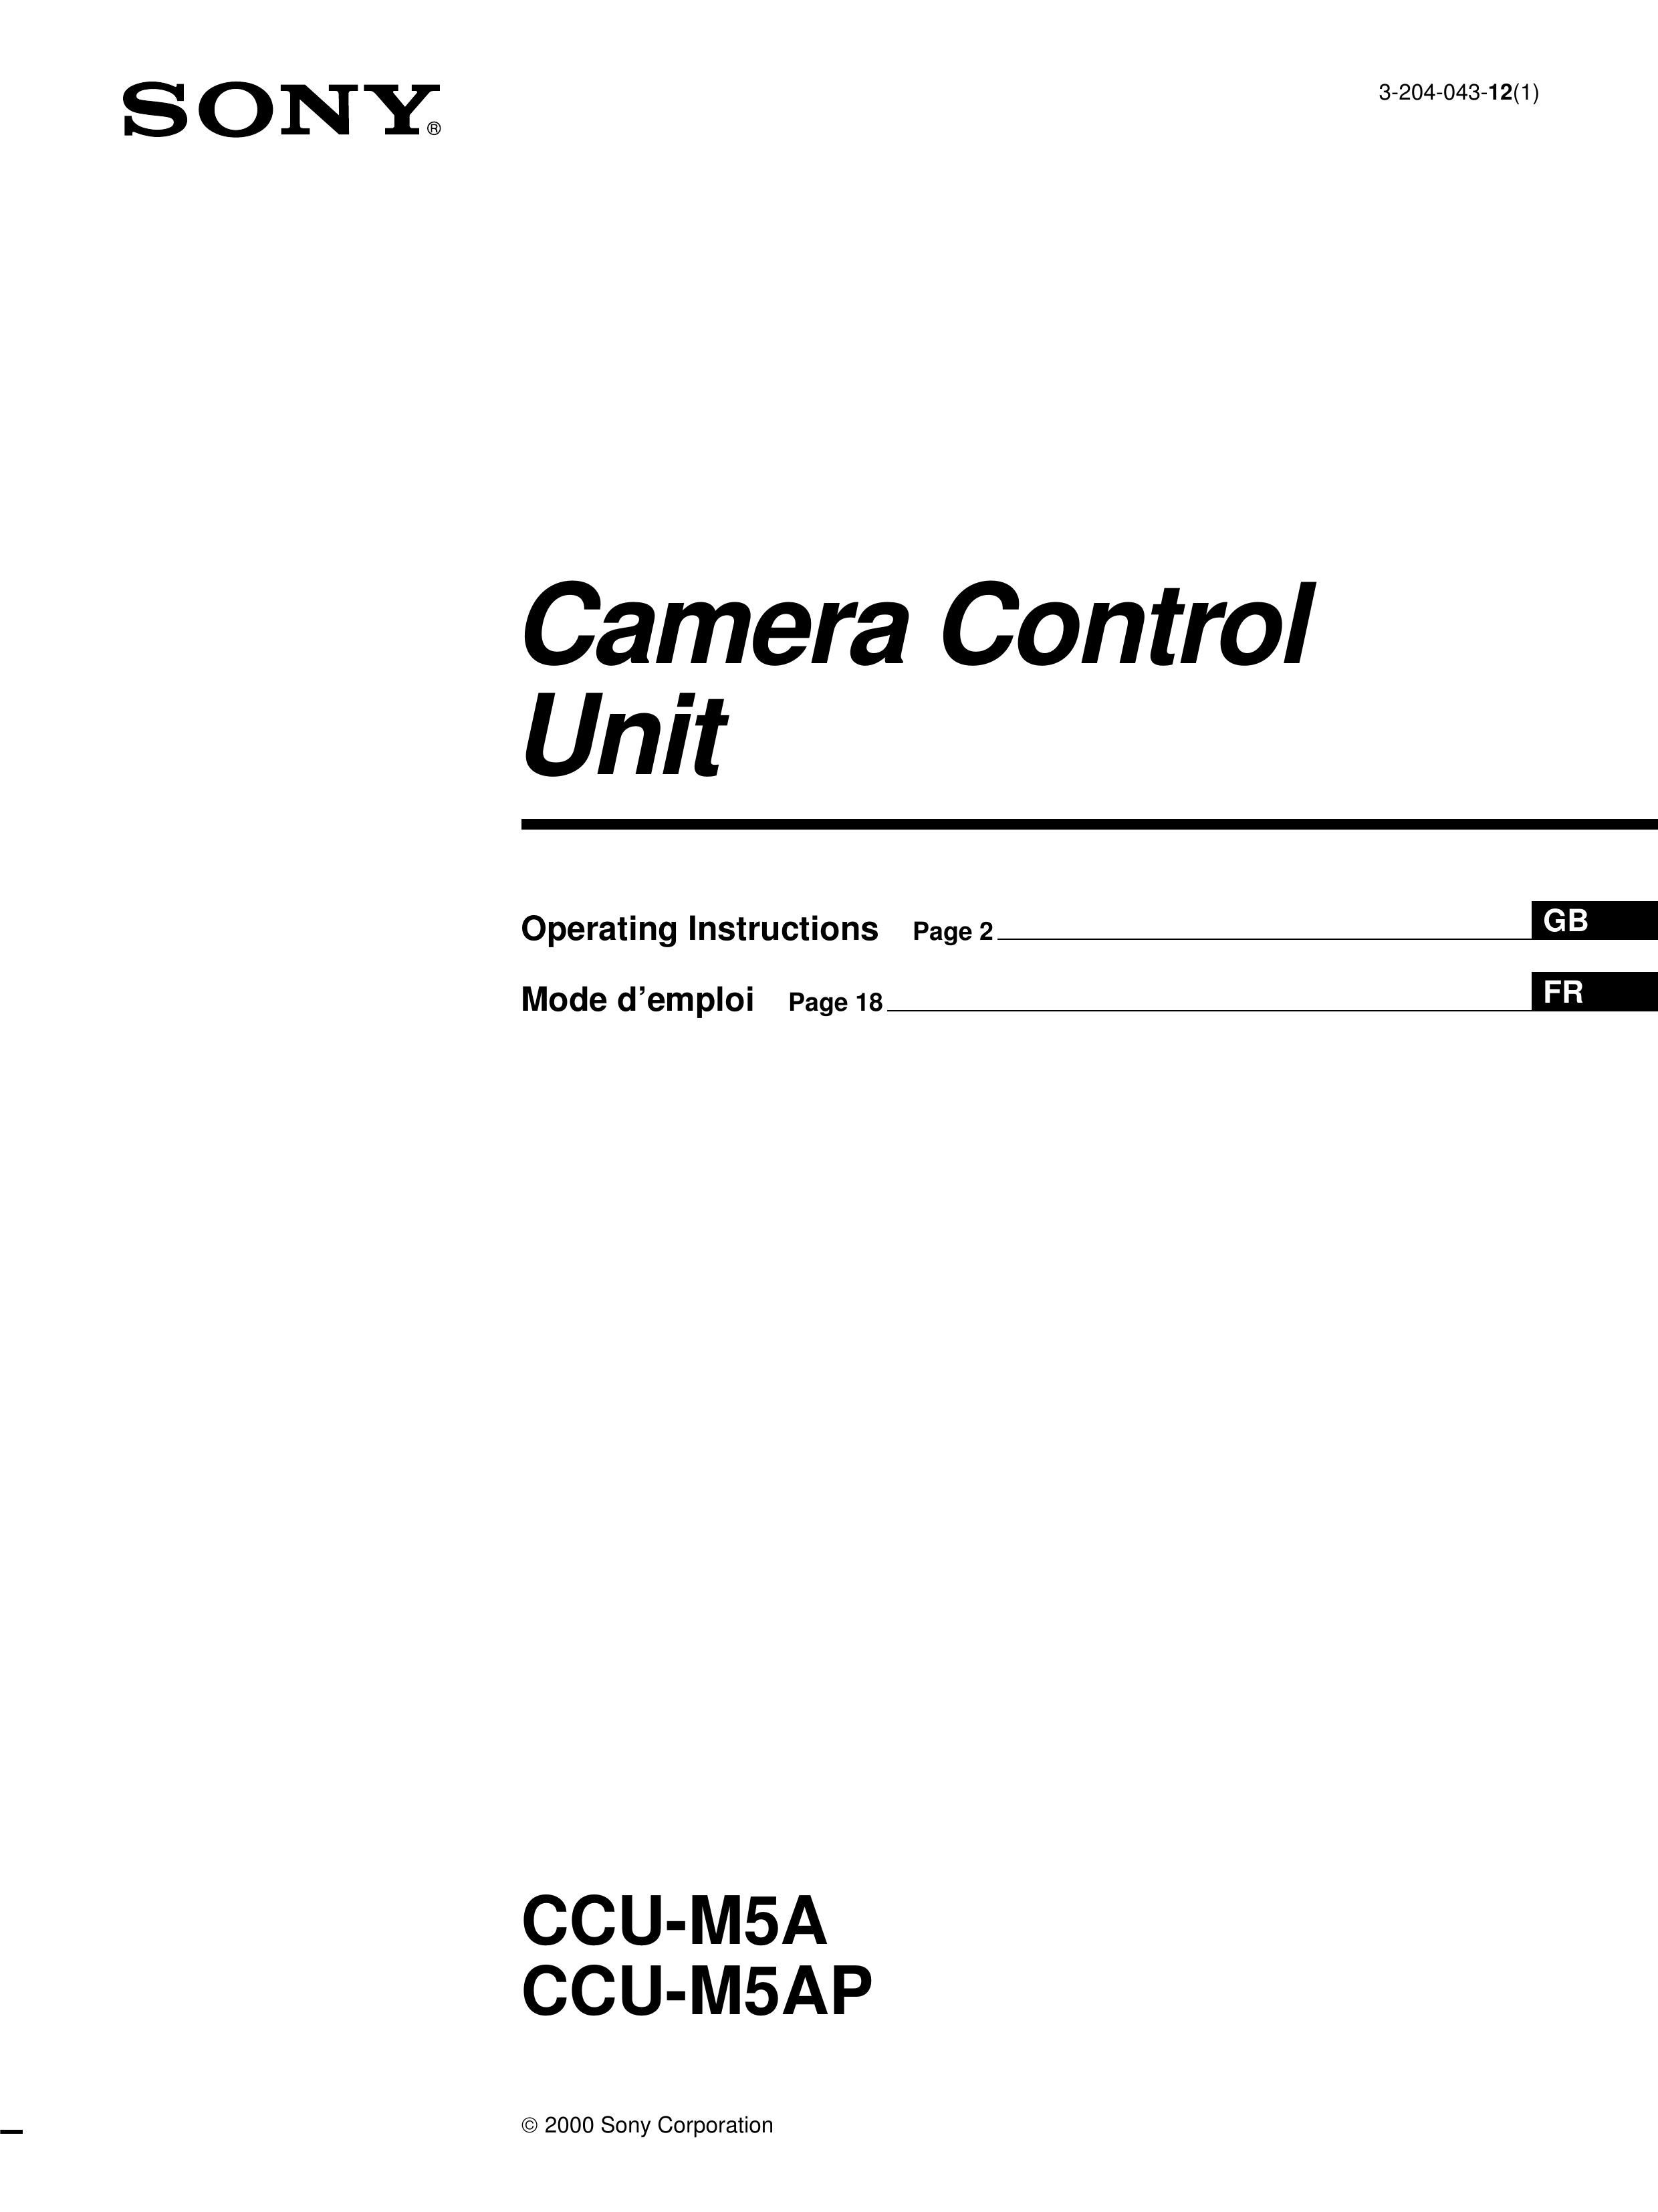 Sony CCU-M5A Security Camera User Manual